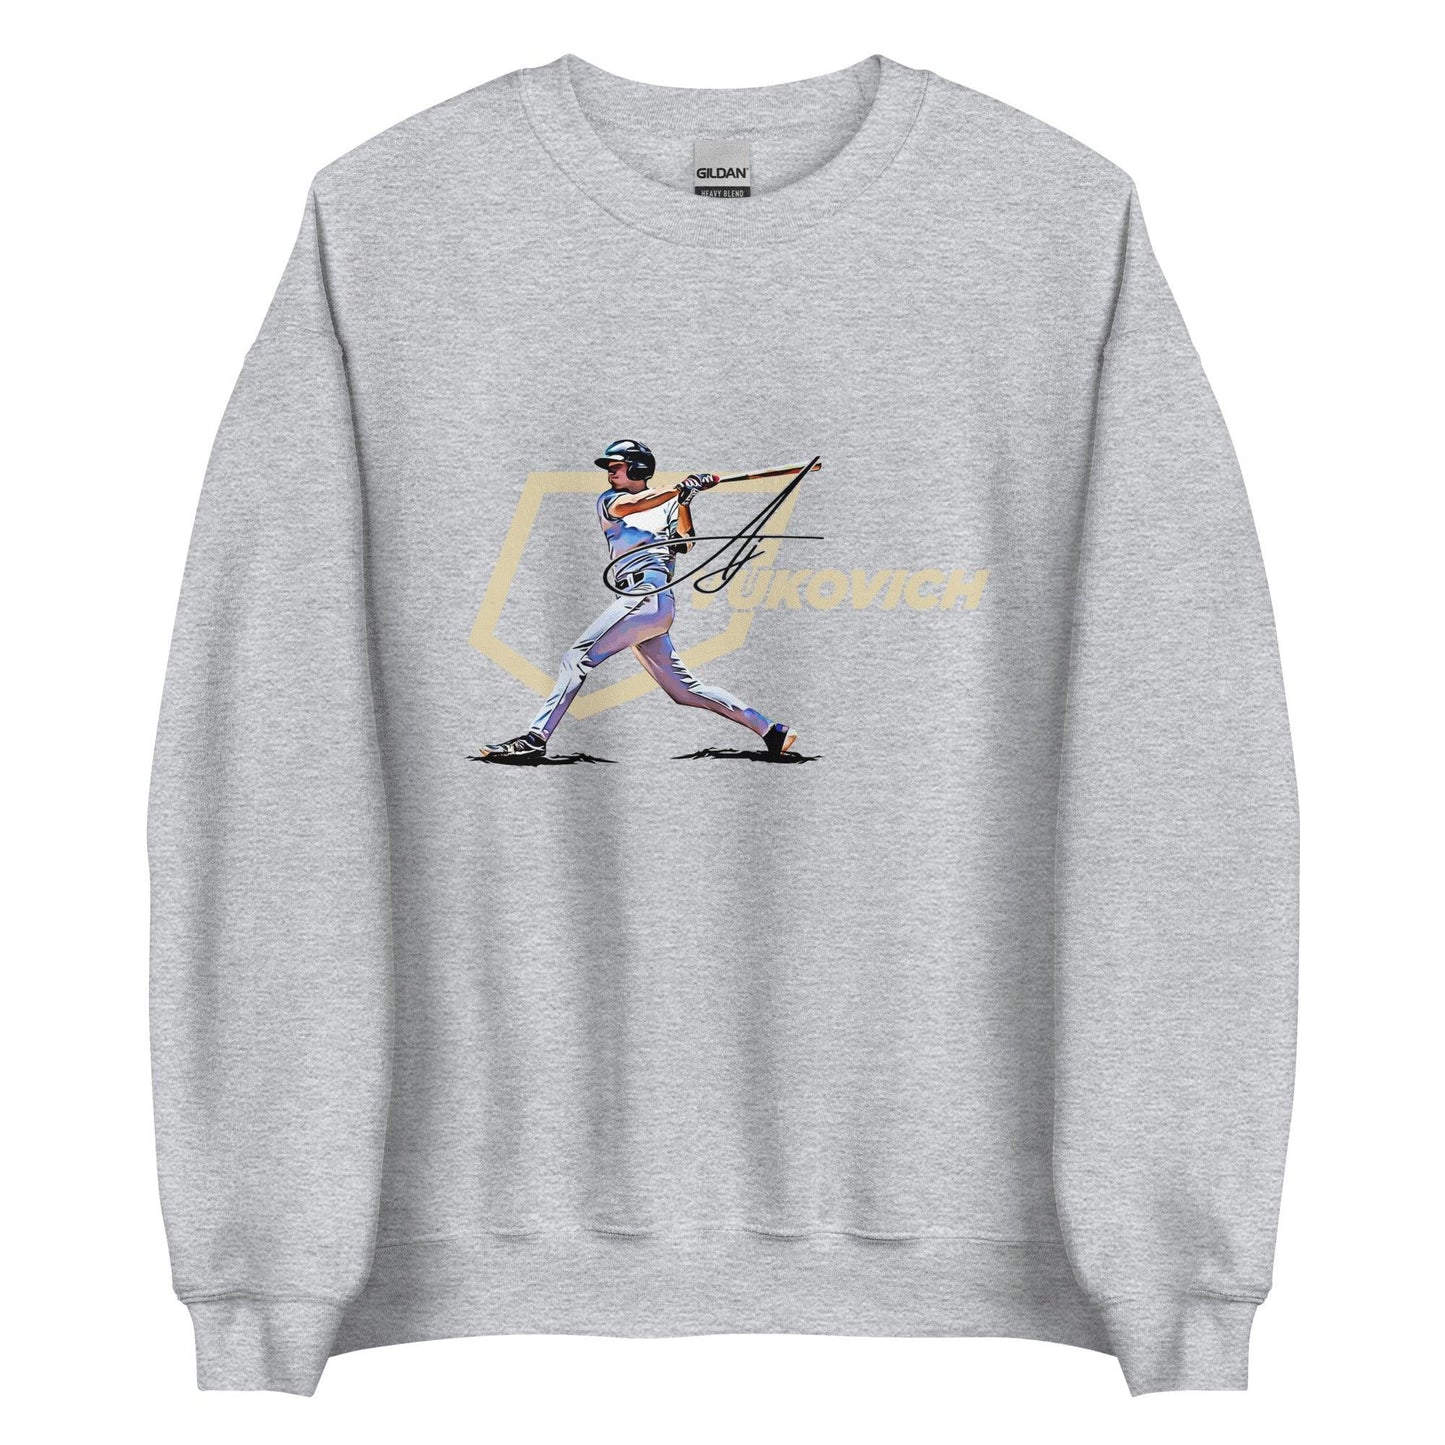 AJ Vukovich “Essential” Sweatshirt - Fan Arch